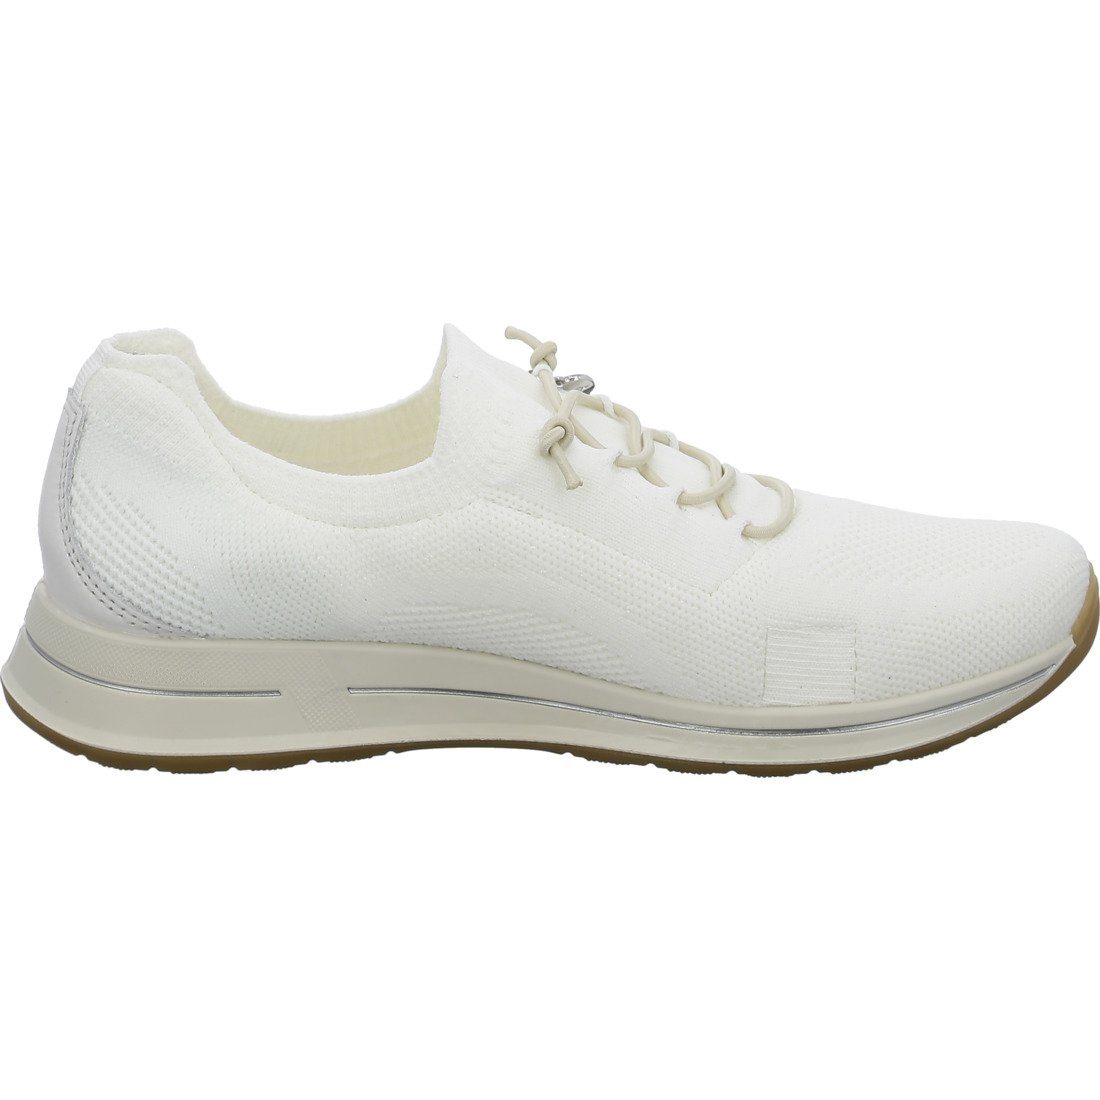 Schuhe, - Textil Damen Ara Ara offwhite 047978 Sneaker Osaka Sneaker